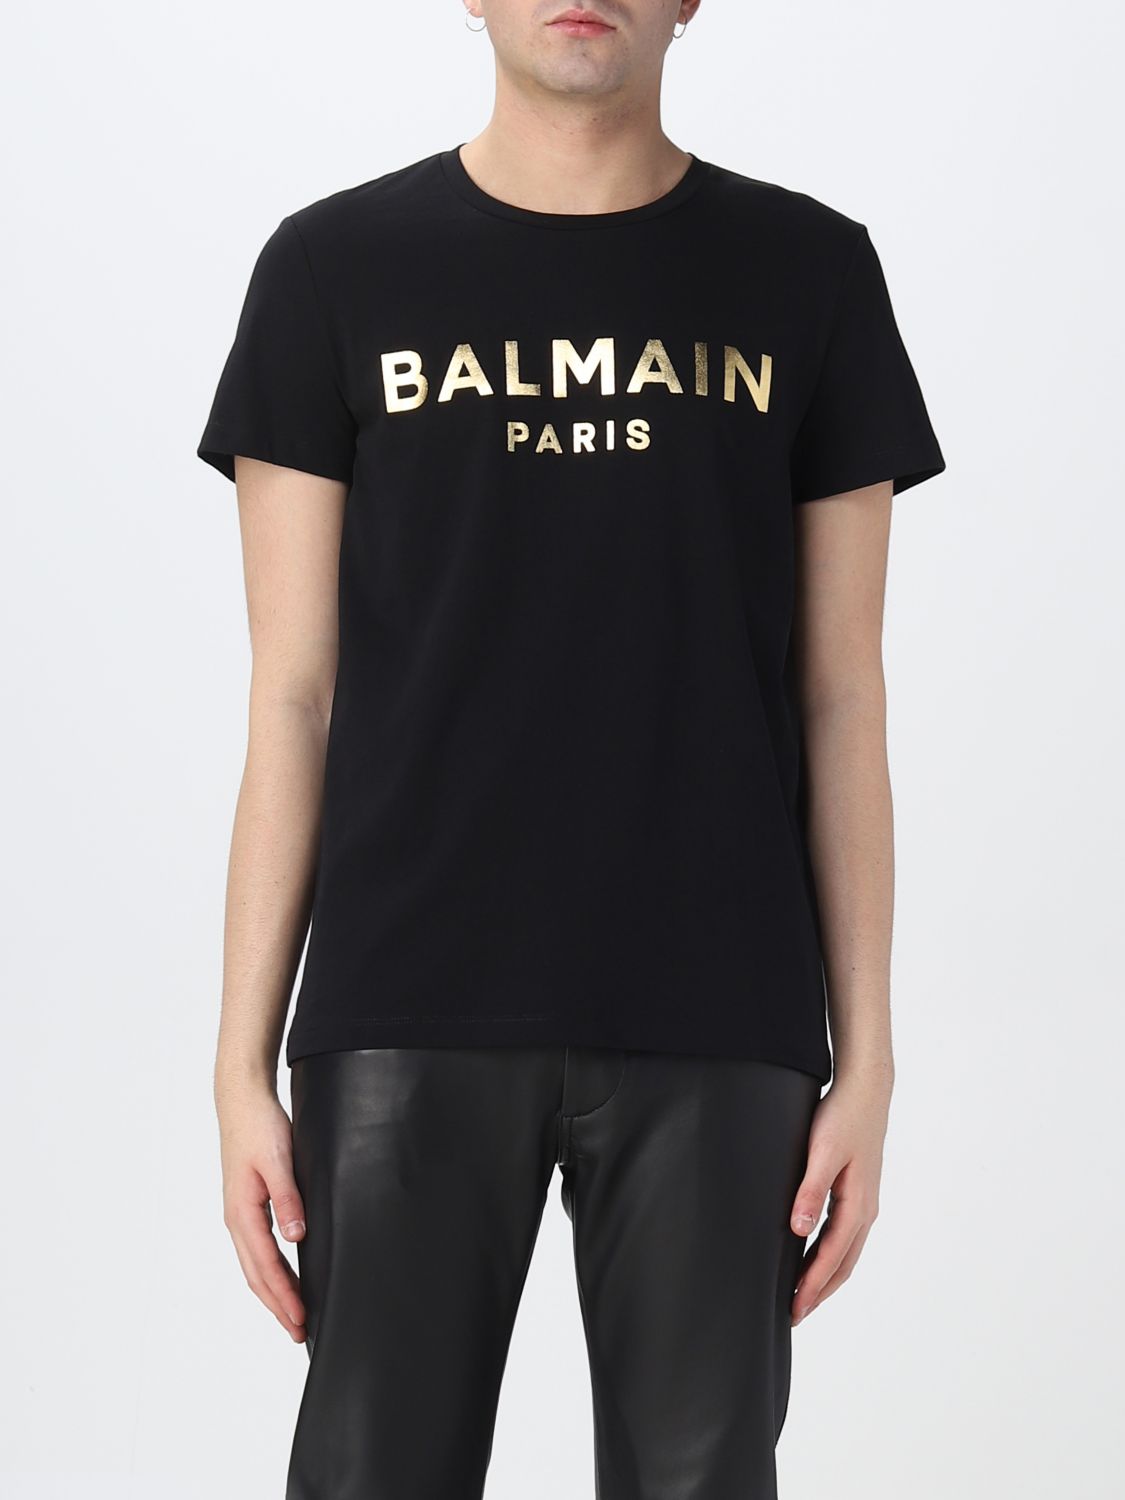 Geaccepteerd Vertrouwen op rechter BALMAIN: t-shirt for man - Black | Balmain t-shirt AH1EF000BB29 online on  GIGLIO.COM